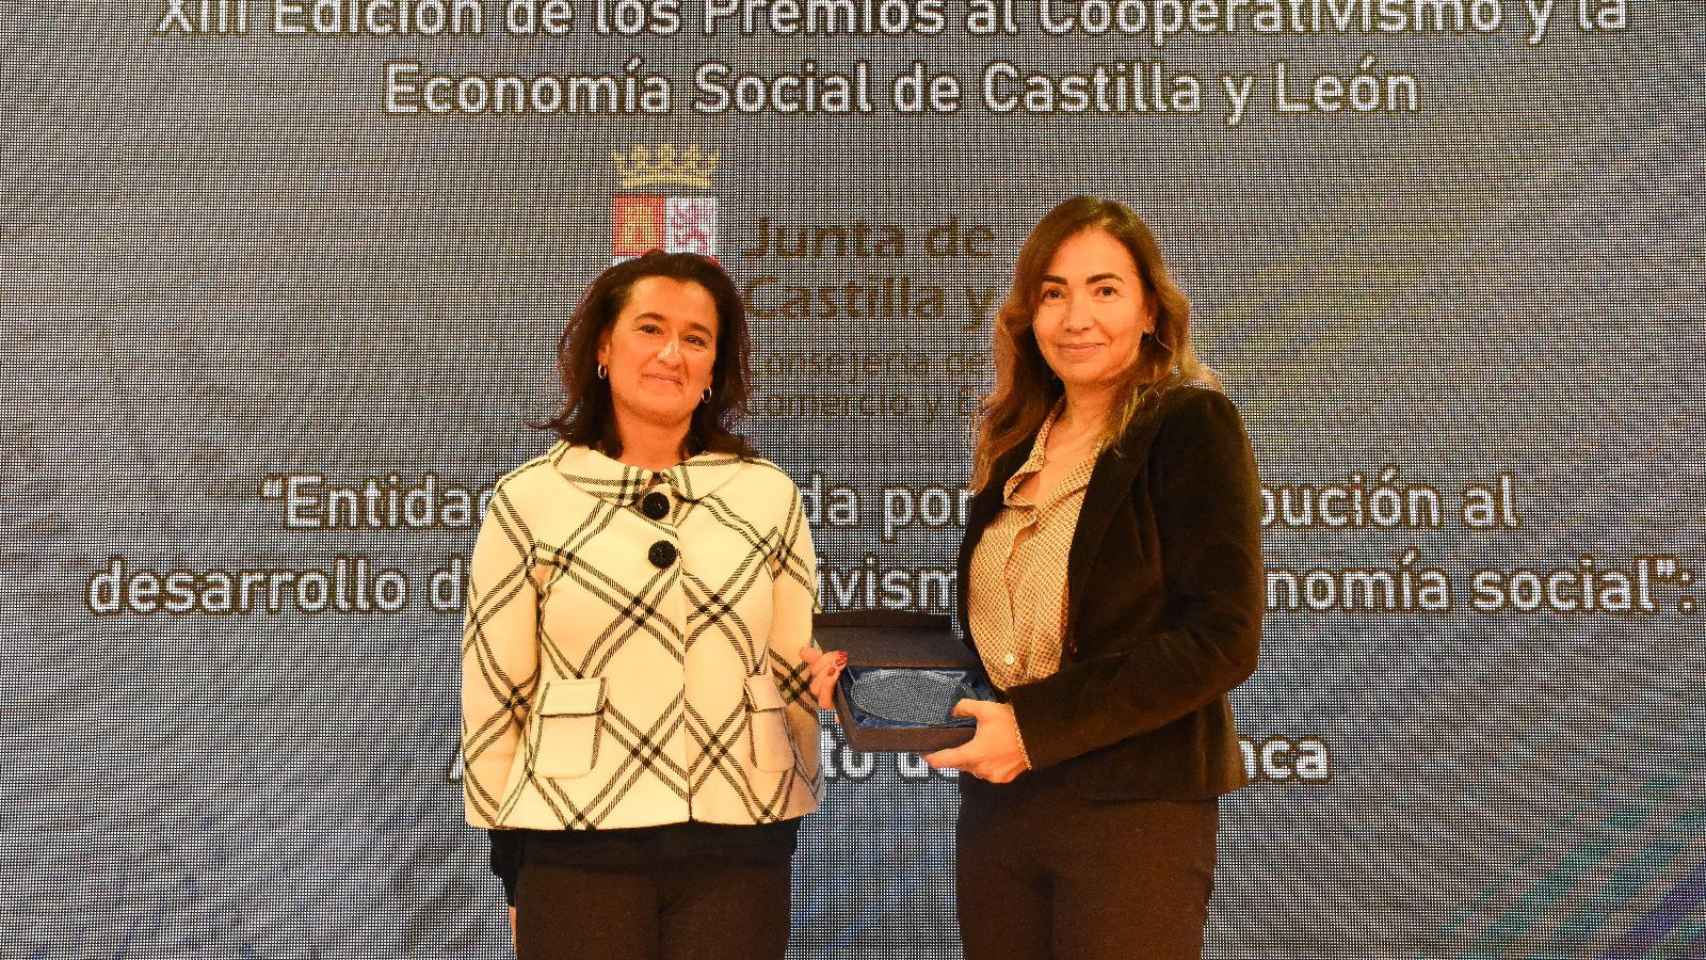 Premio a la persona o entidad que se haya distinguido por su contribución al desarrollo del cooperativismo y la economía social al «Excmo. Ayuntamiento de Salamanca».